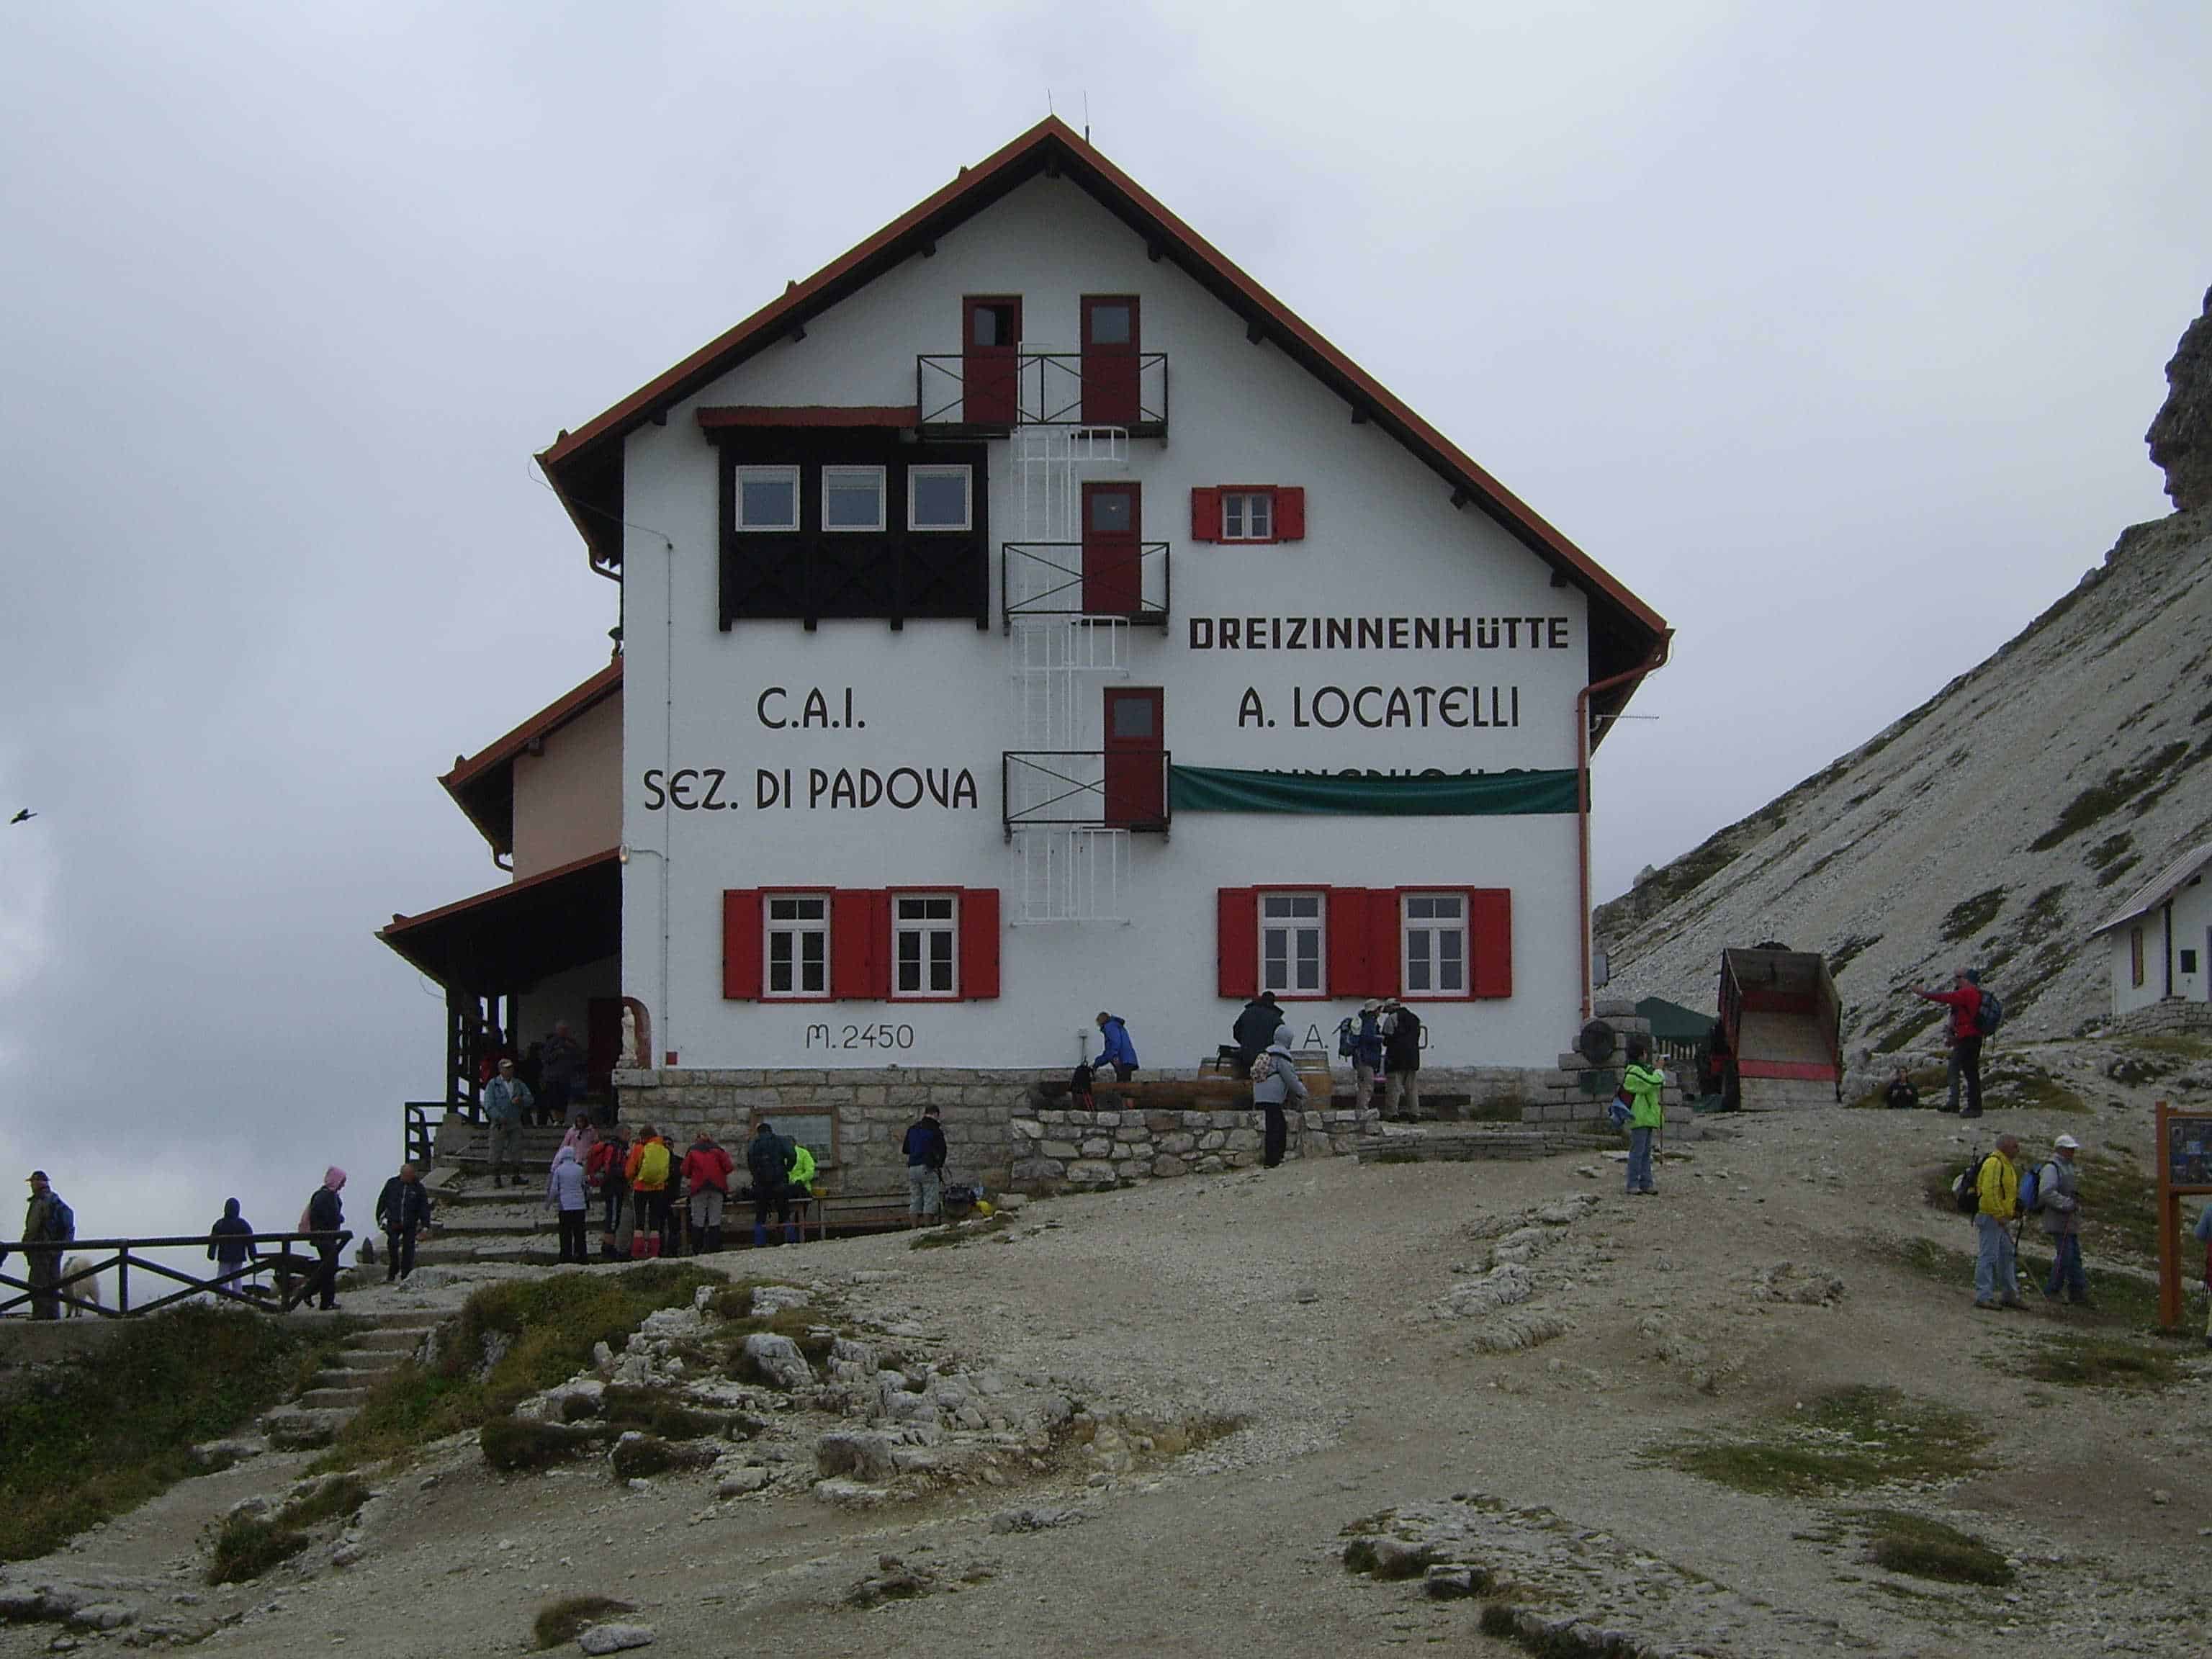 Dreizinnenhütte / Sexten Dolomity